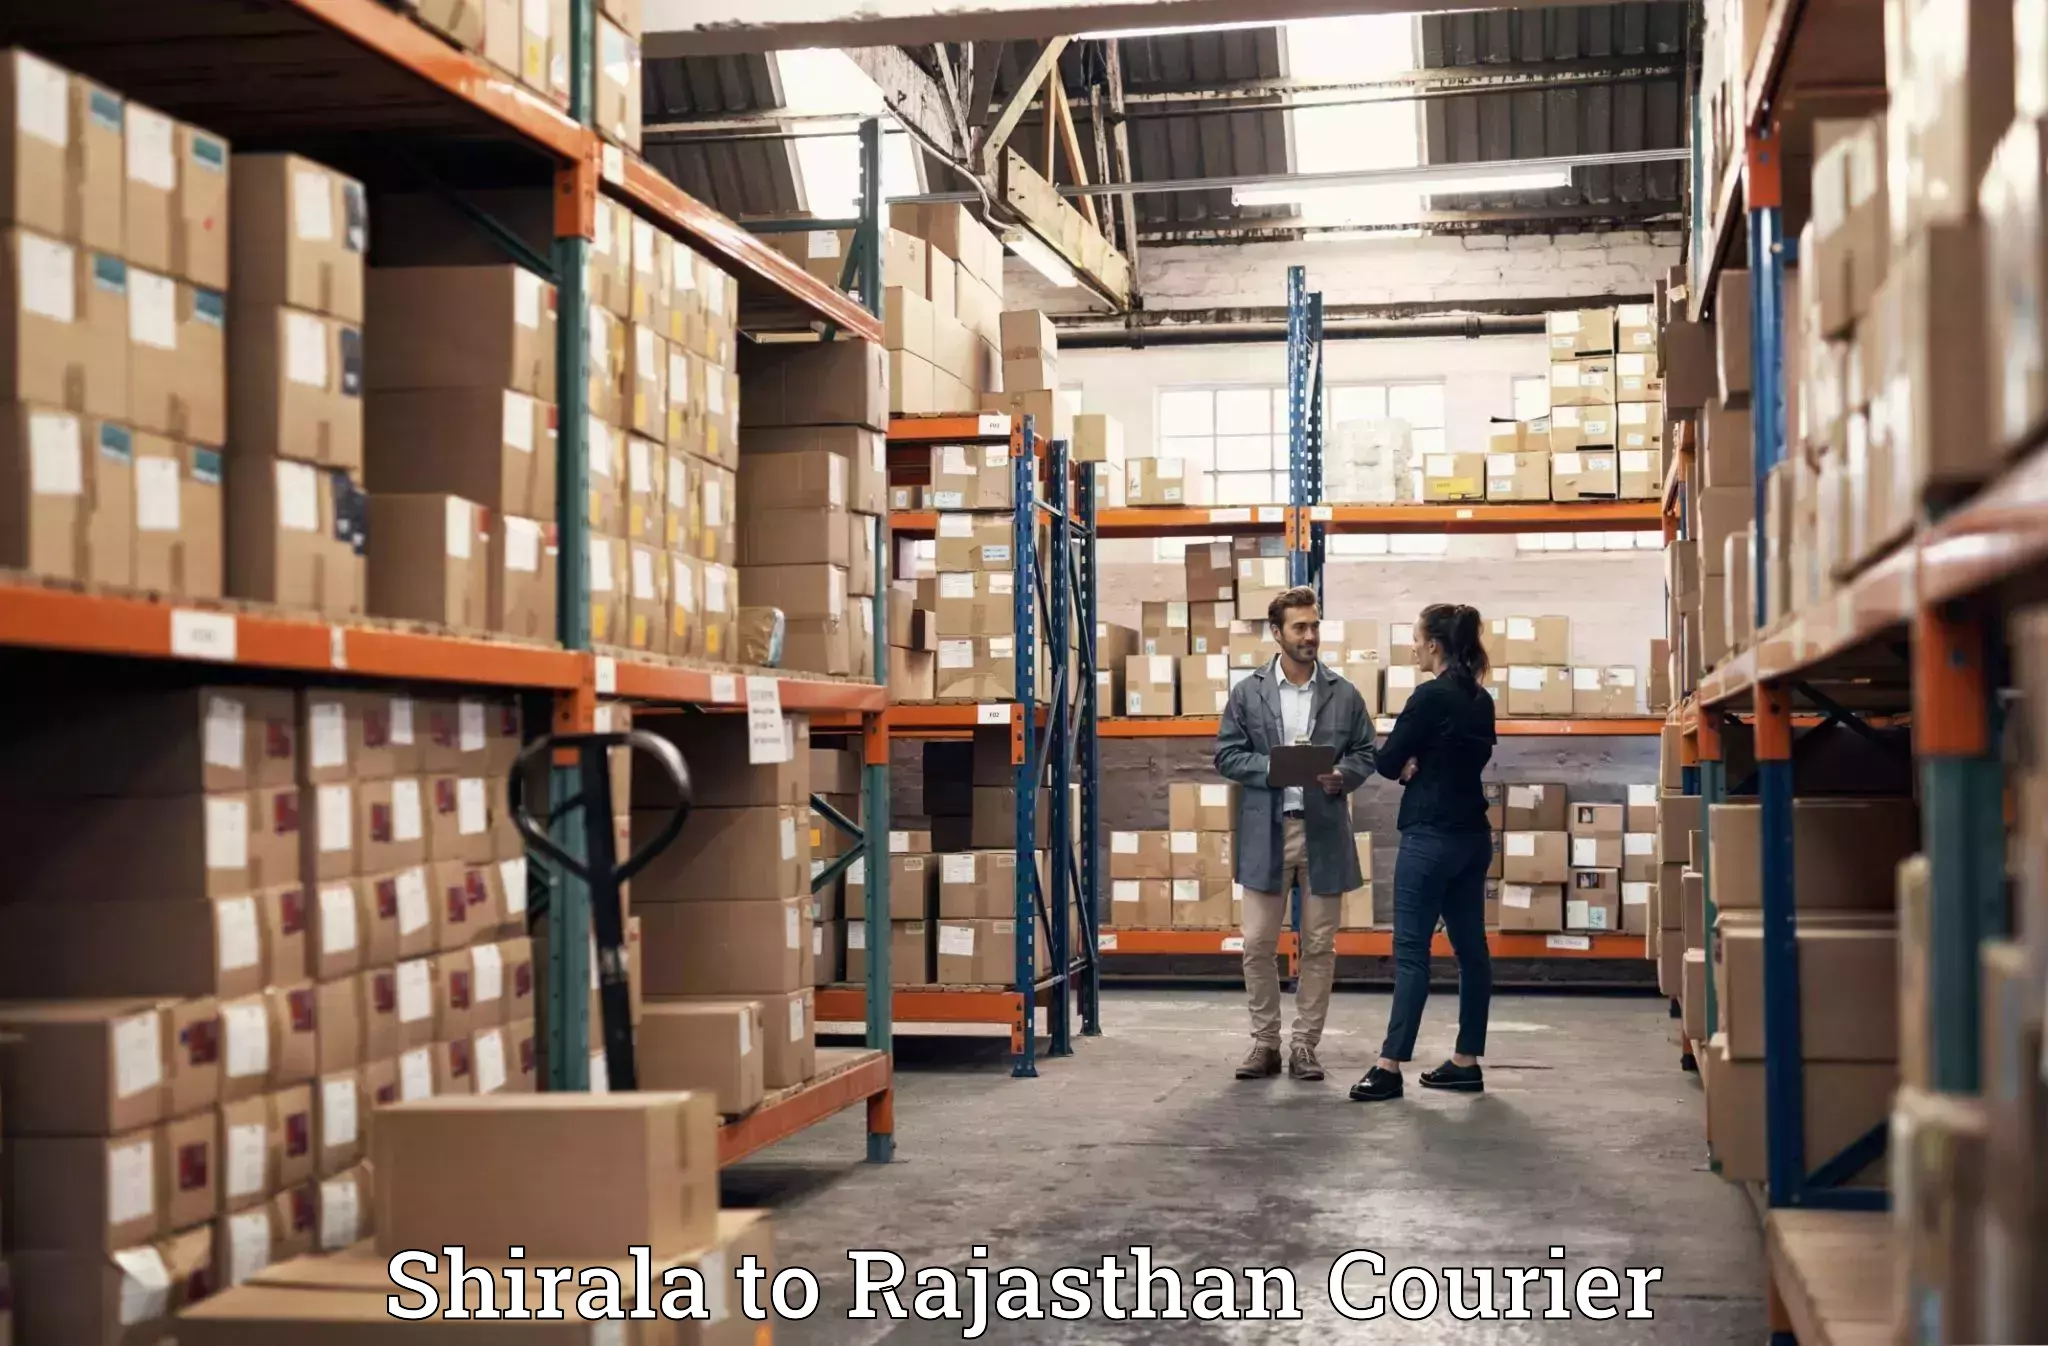 Baggage transport network Shirala to Rajgarh Rajasthan